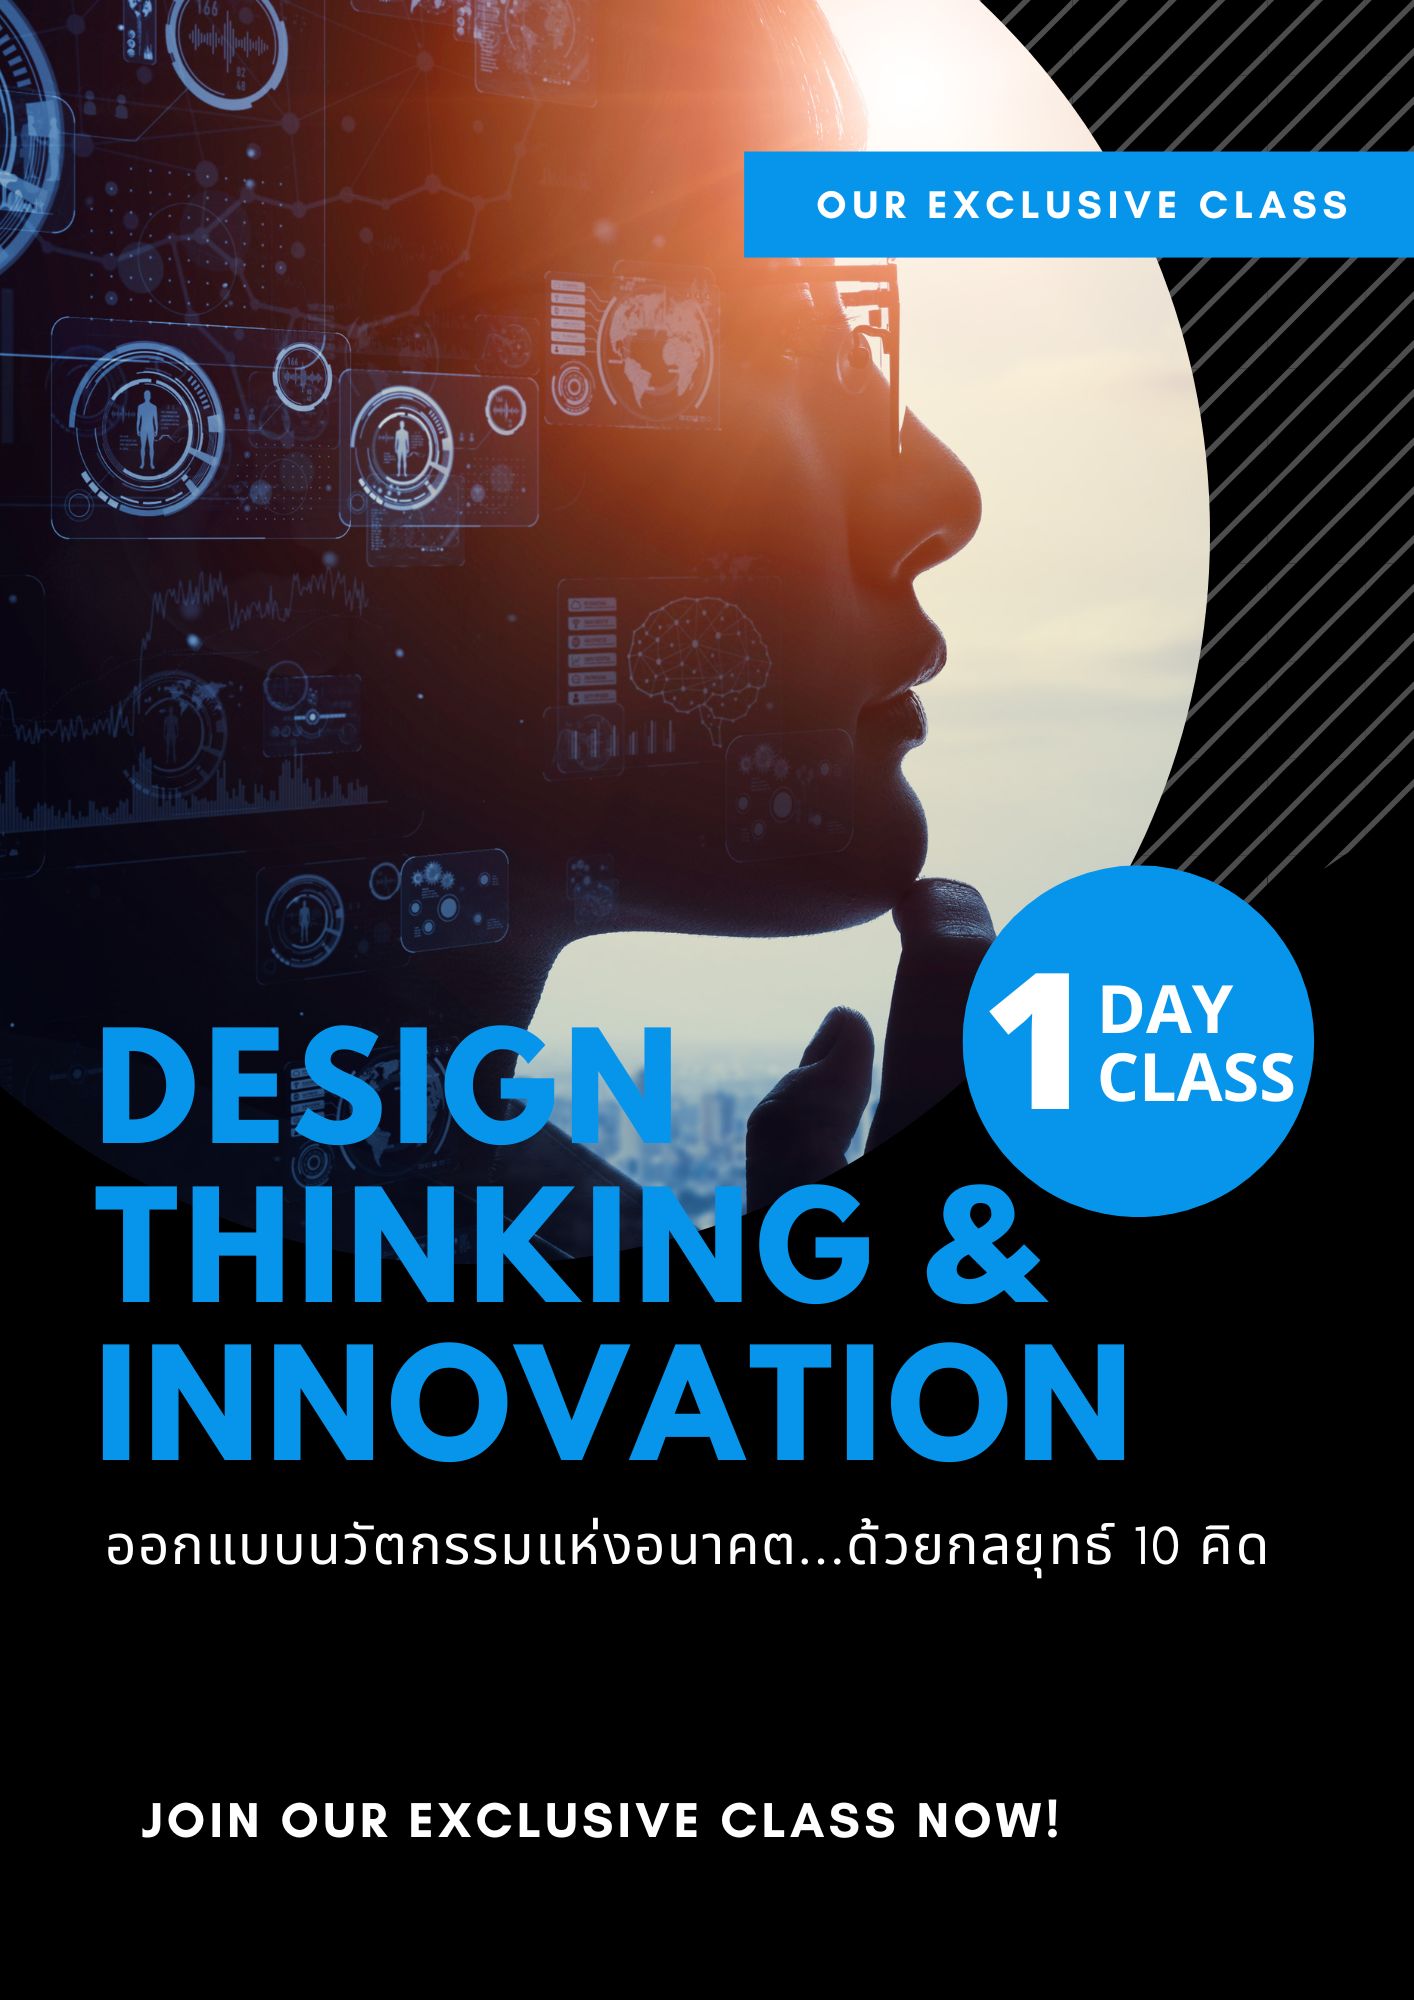 หลักสูตรอบรม ออกแบบนวัตกรรมแห่งอนาคต...ด้วยกลยุทธ์ 10 คิด  (Design thinking & Innovation)